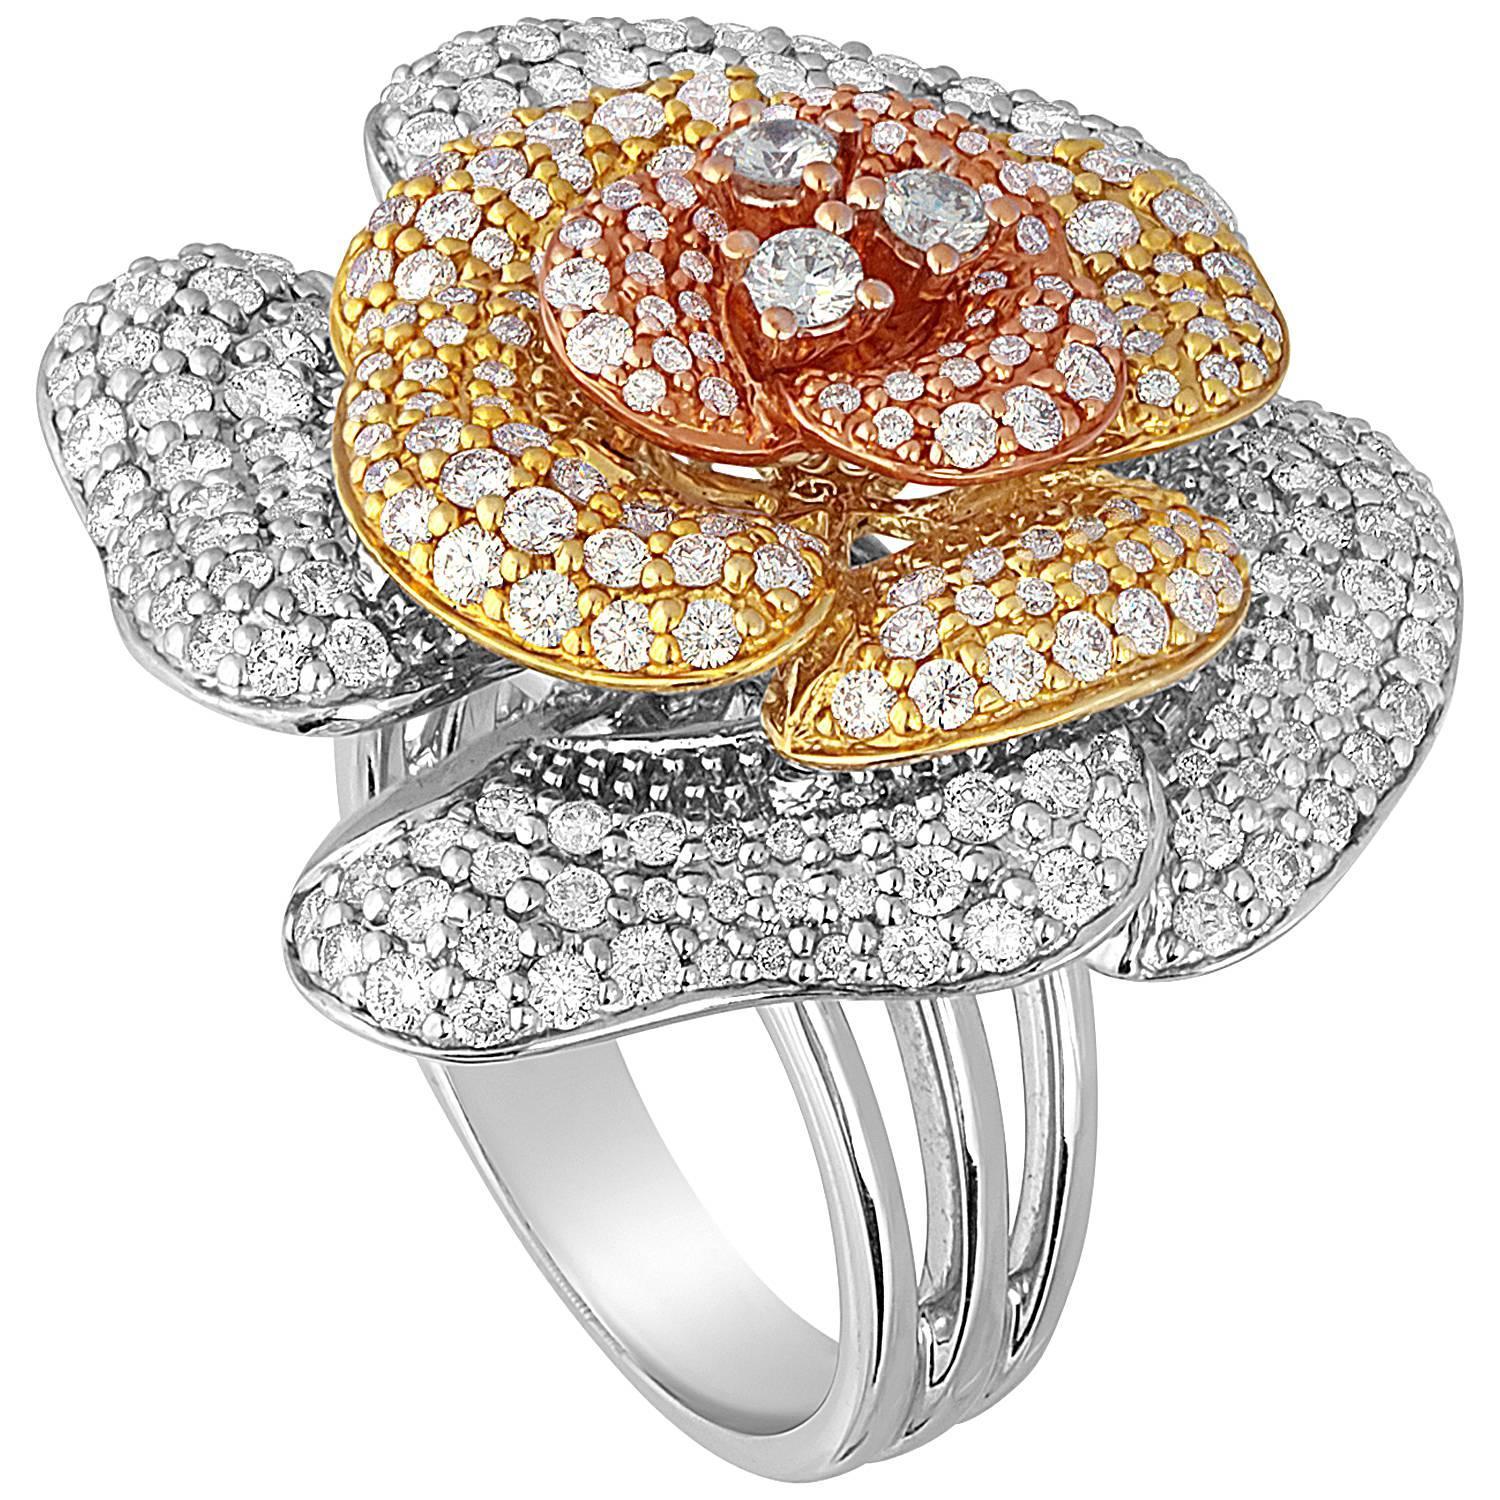 Цветочное кольцо 1. Кольцо цветок Санлайт. Кольцо цветок золото. Tophills Jewellery кольцо цветок.